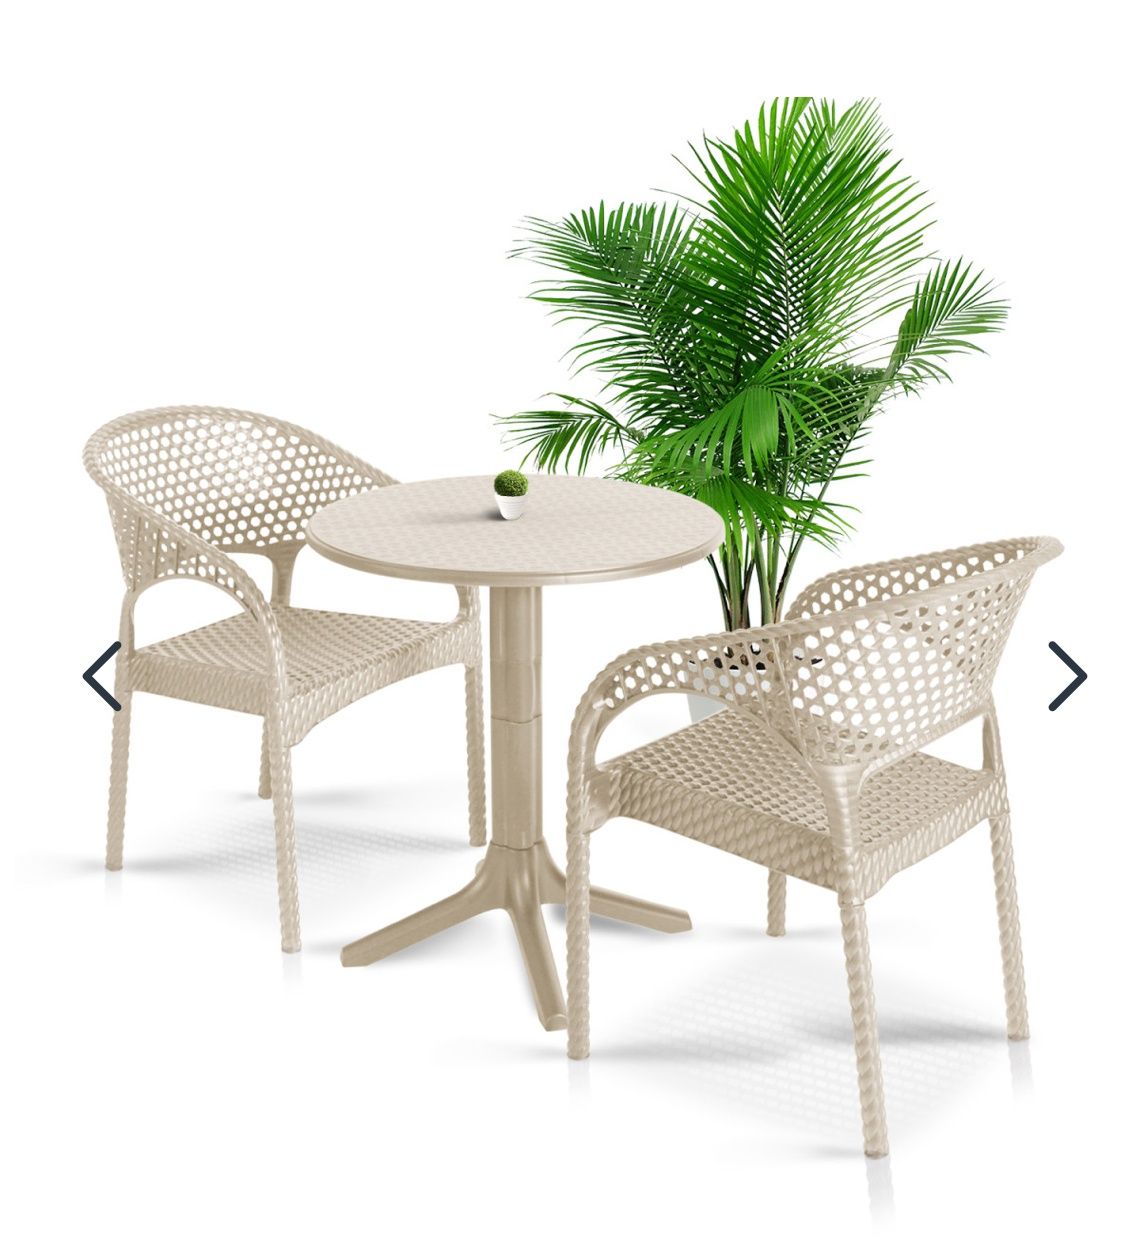 градински комплект маса с столове/маси/стол